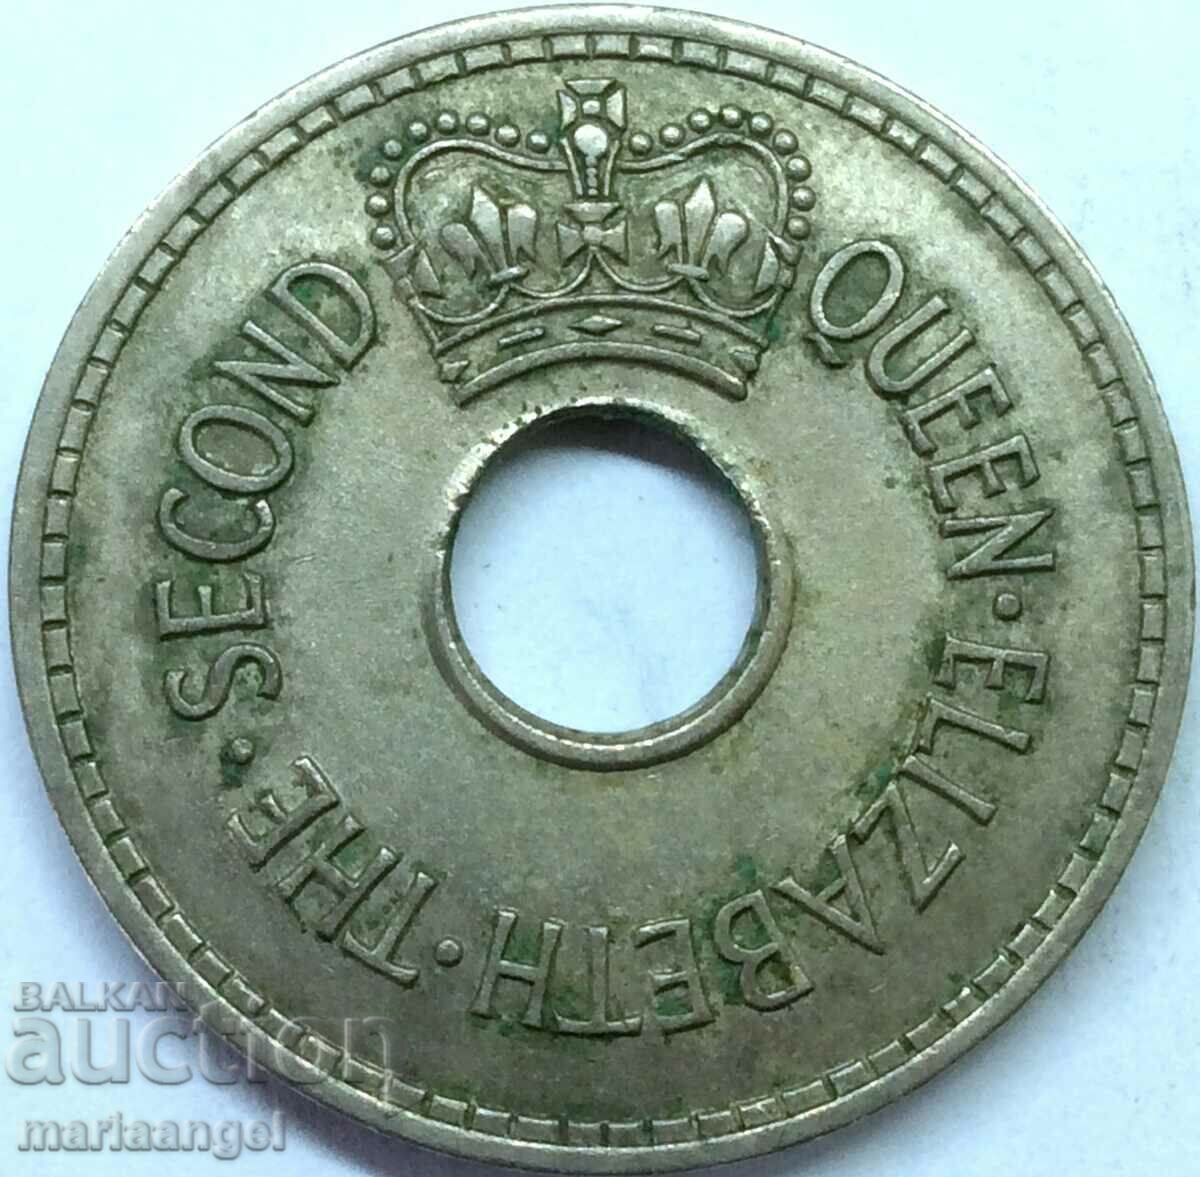 Fiji 1965 1 penny Elizabeth II